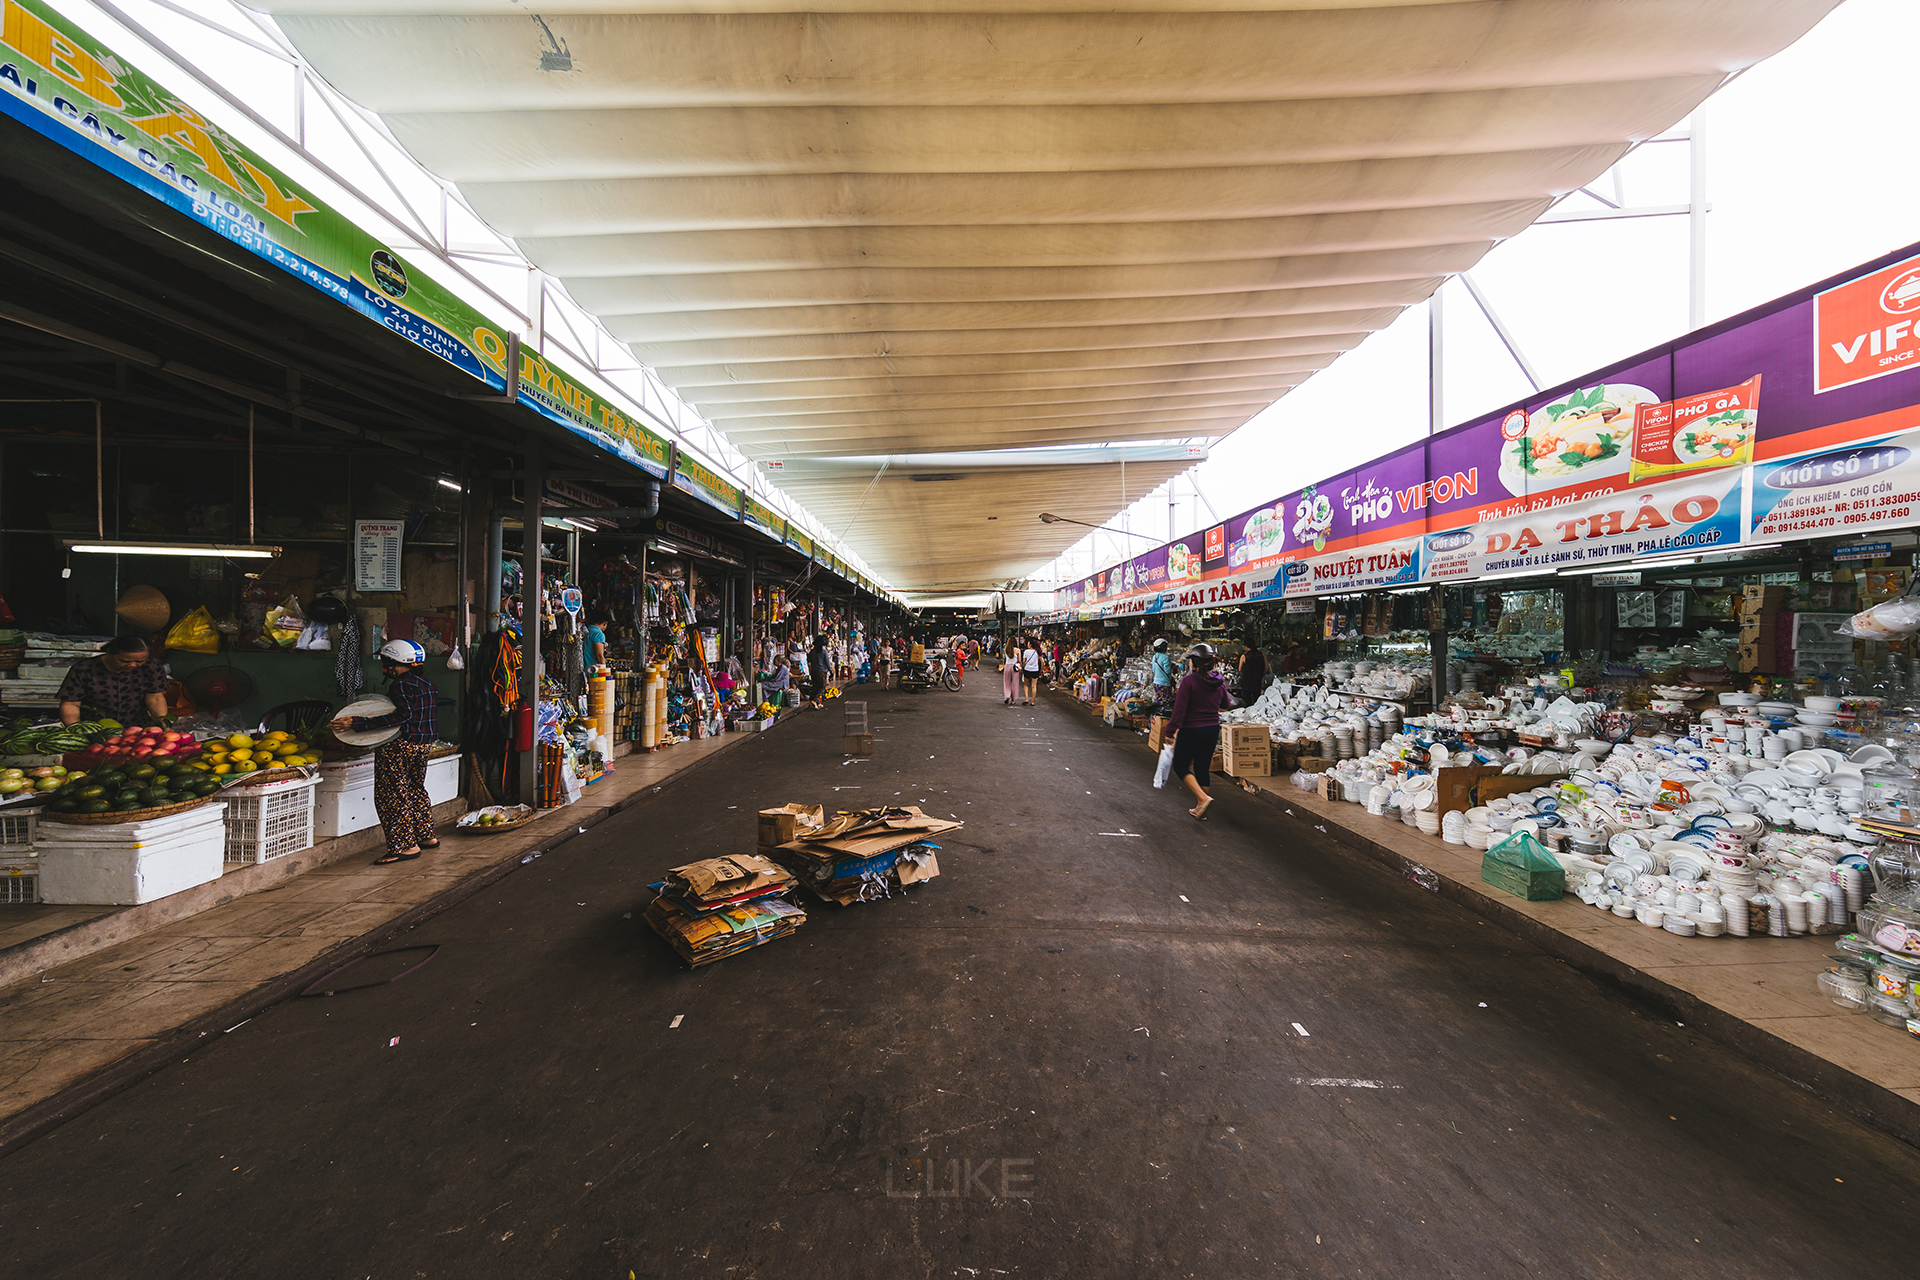 同春市场是河内最大的杂货市场,大楼内经营着各种日用品,外围的街道